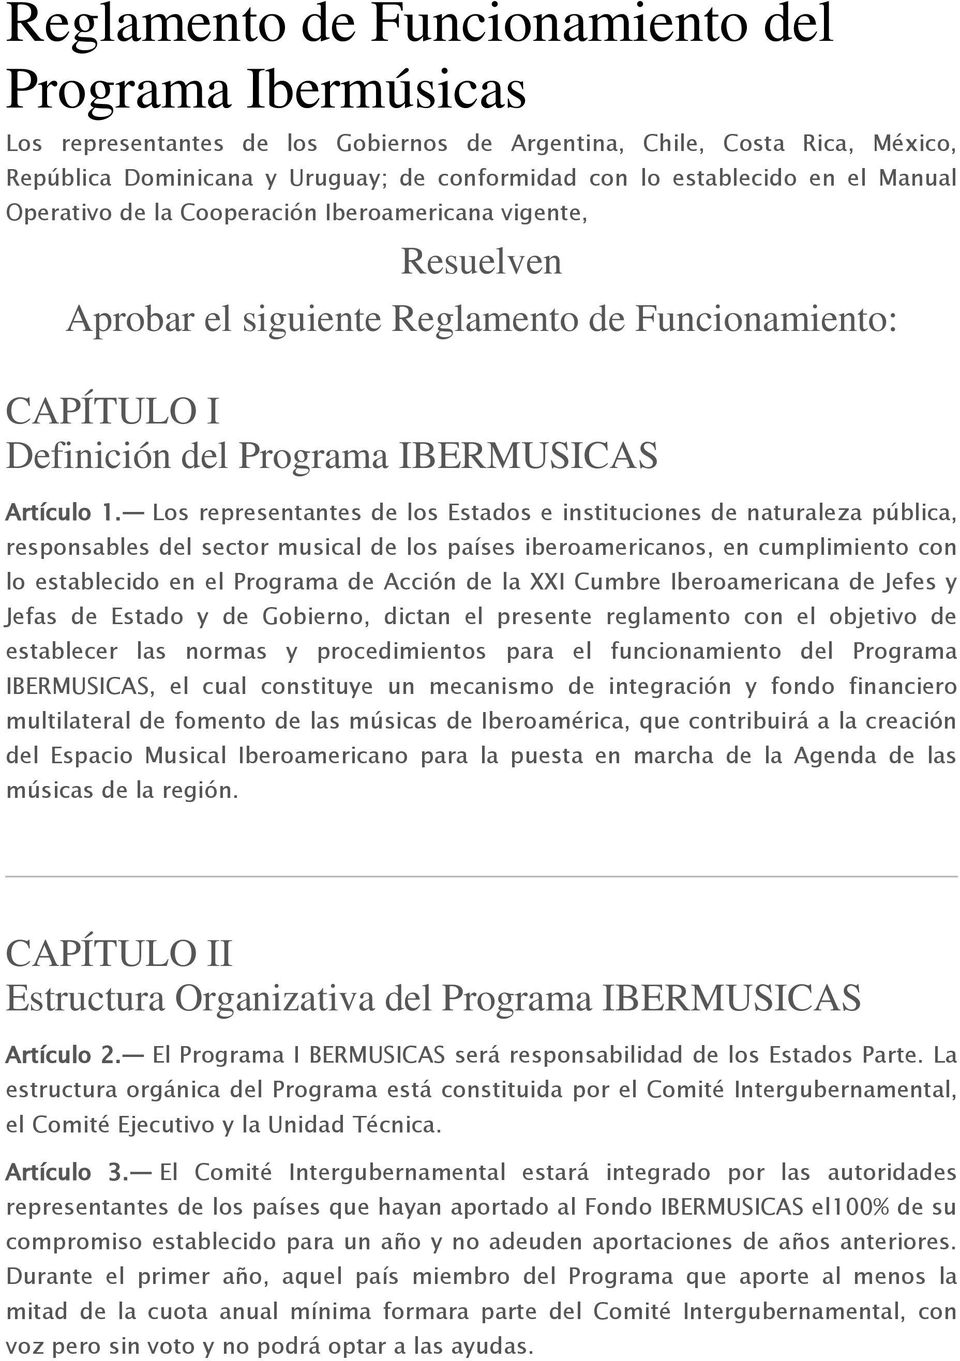 Los representantes de los Estados e instituciones de naturaleza pública, responsables del sector musical de los países iberoamericanos, en cumplimiento con lo establecido en el Programa de Acción de